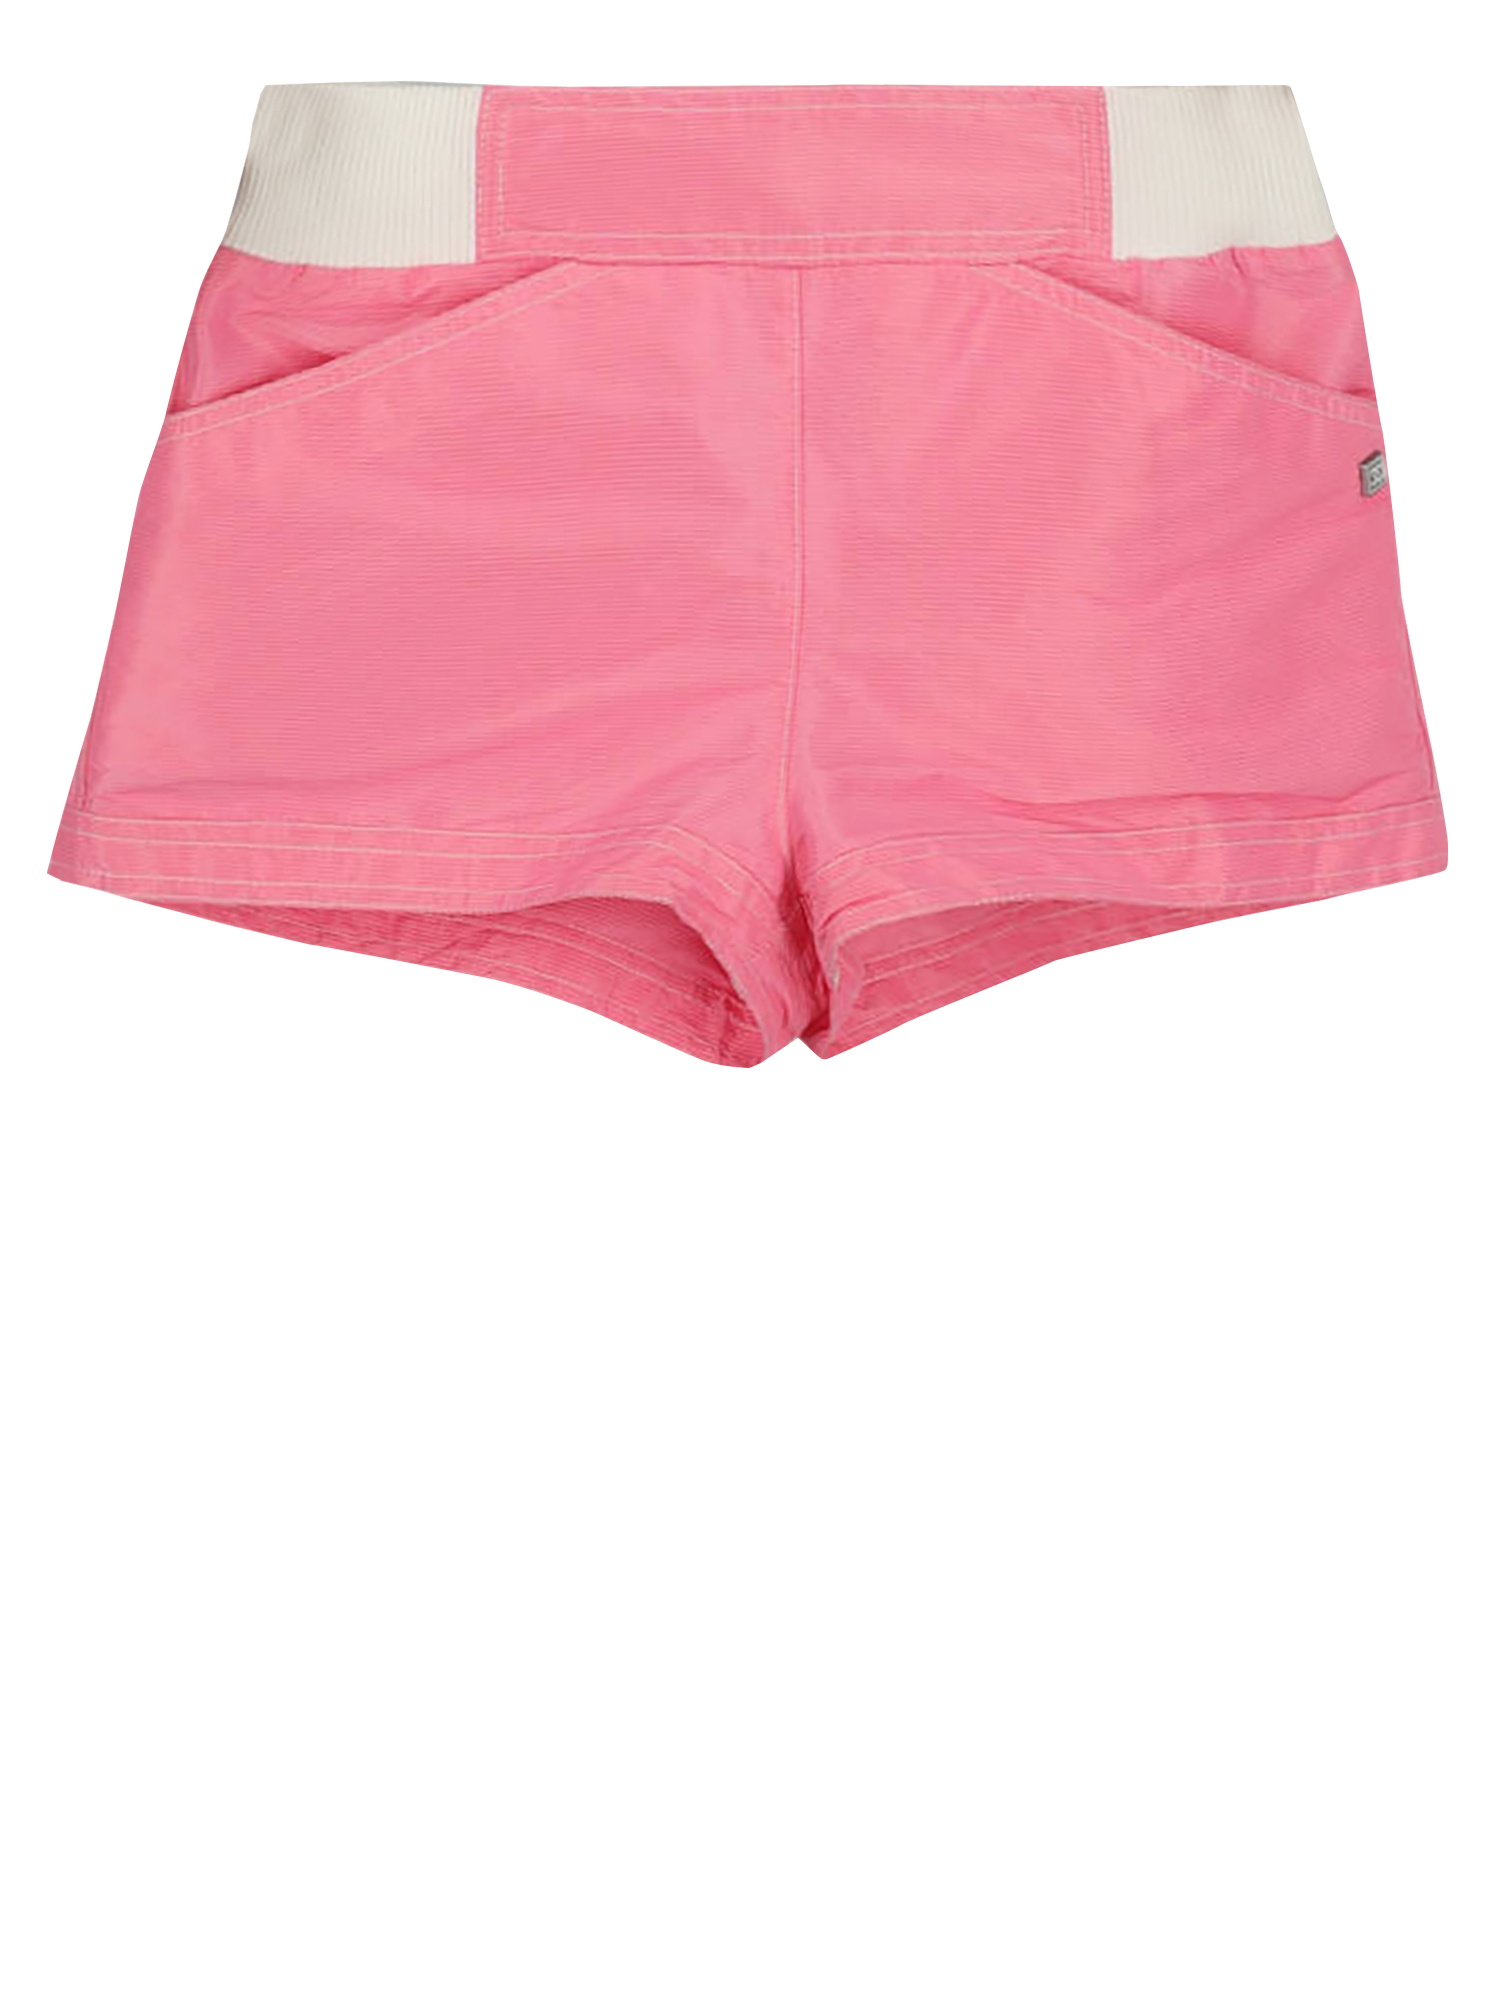 Pantalons Pour Femme - Chanel - En Synthetic Fibers Pink - Taille:  -